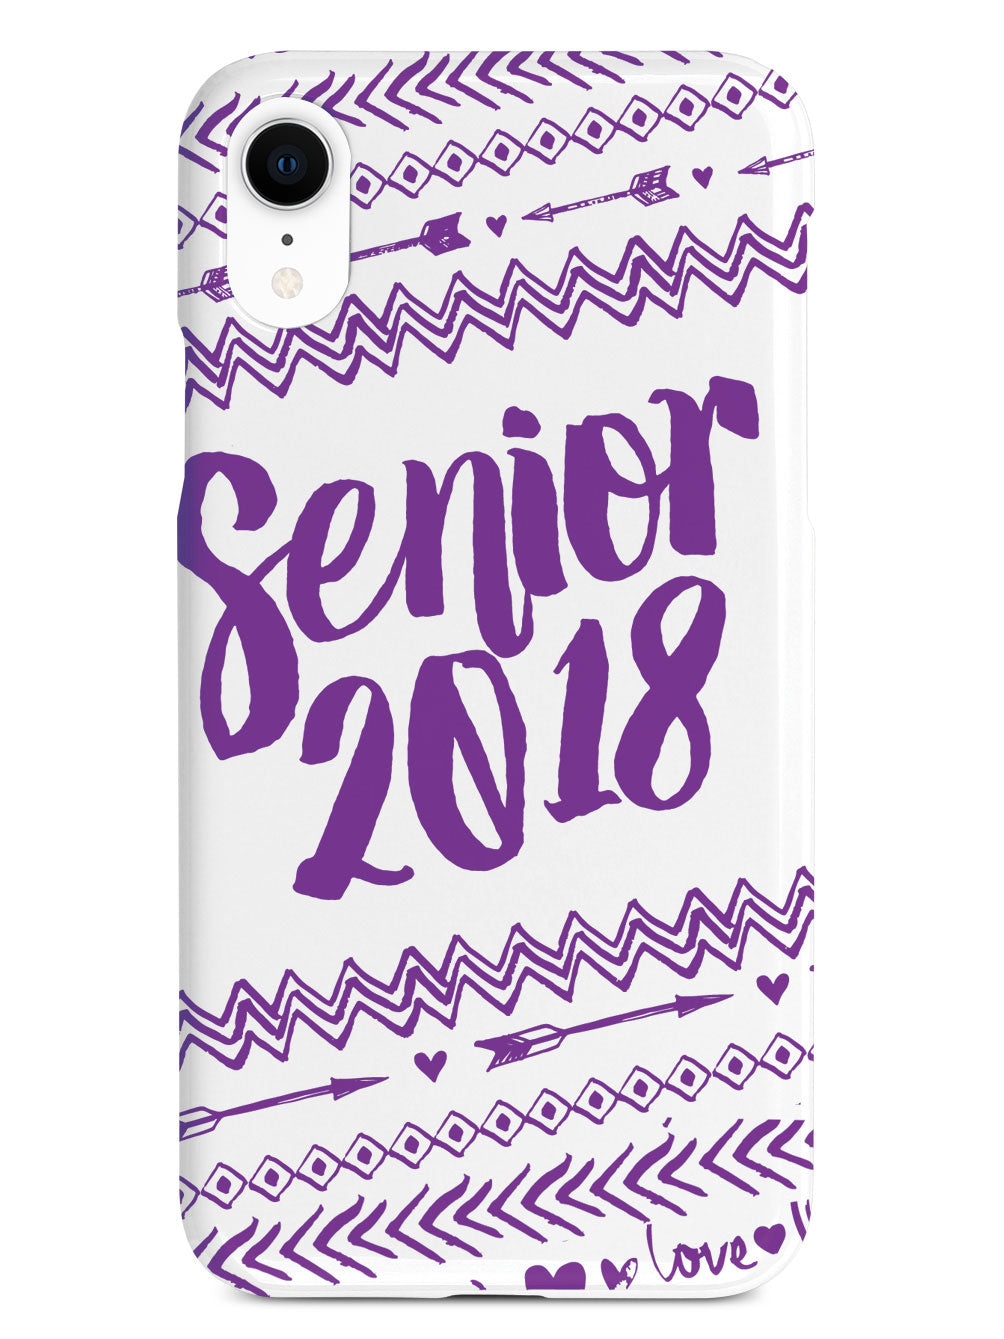 Senior 2018 - Purple Case